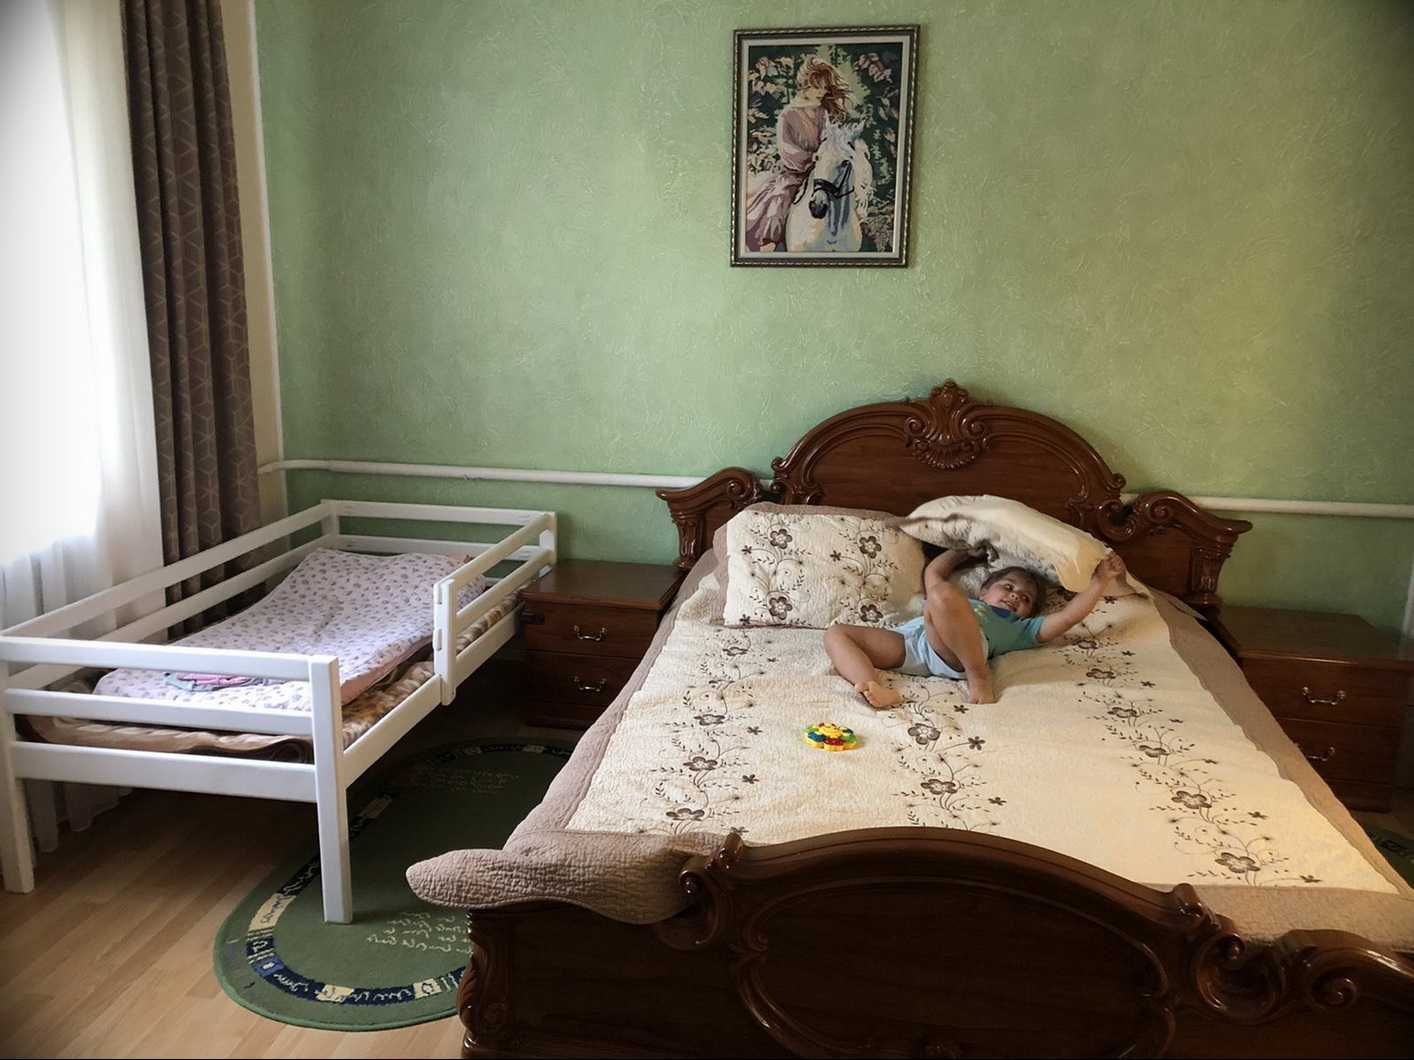 Кровать детская Coфия белый цвeт.Мaсcив дeрева.Ліжко для дітей